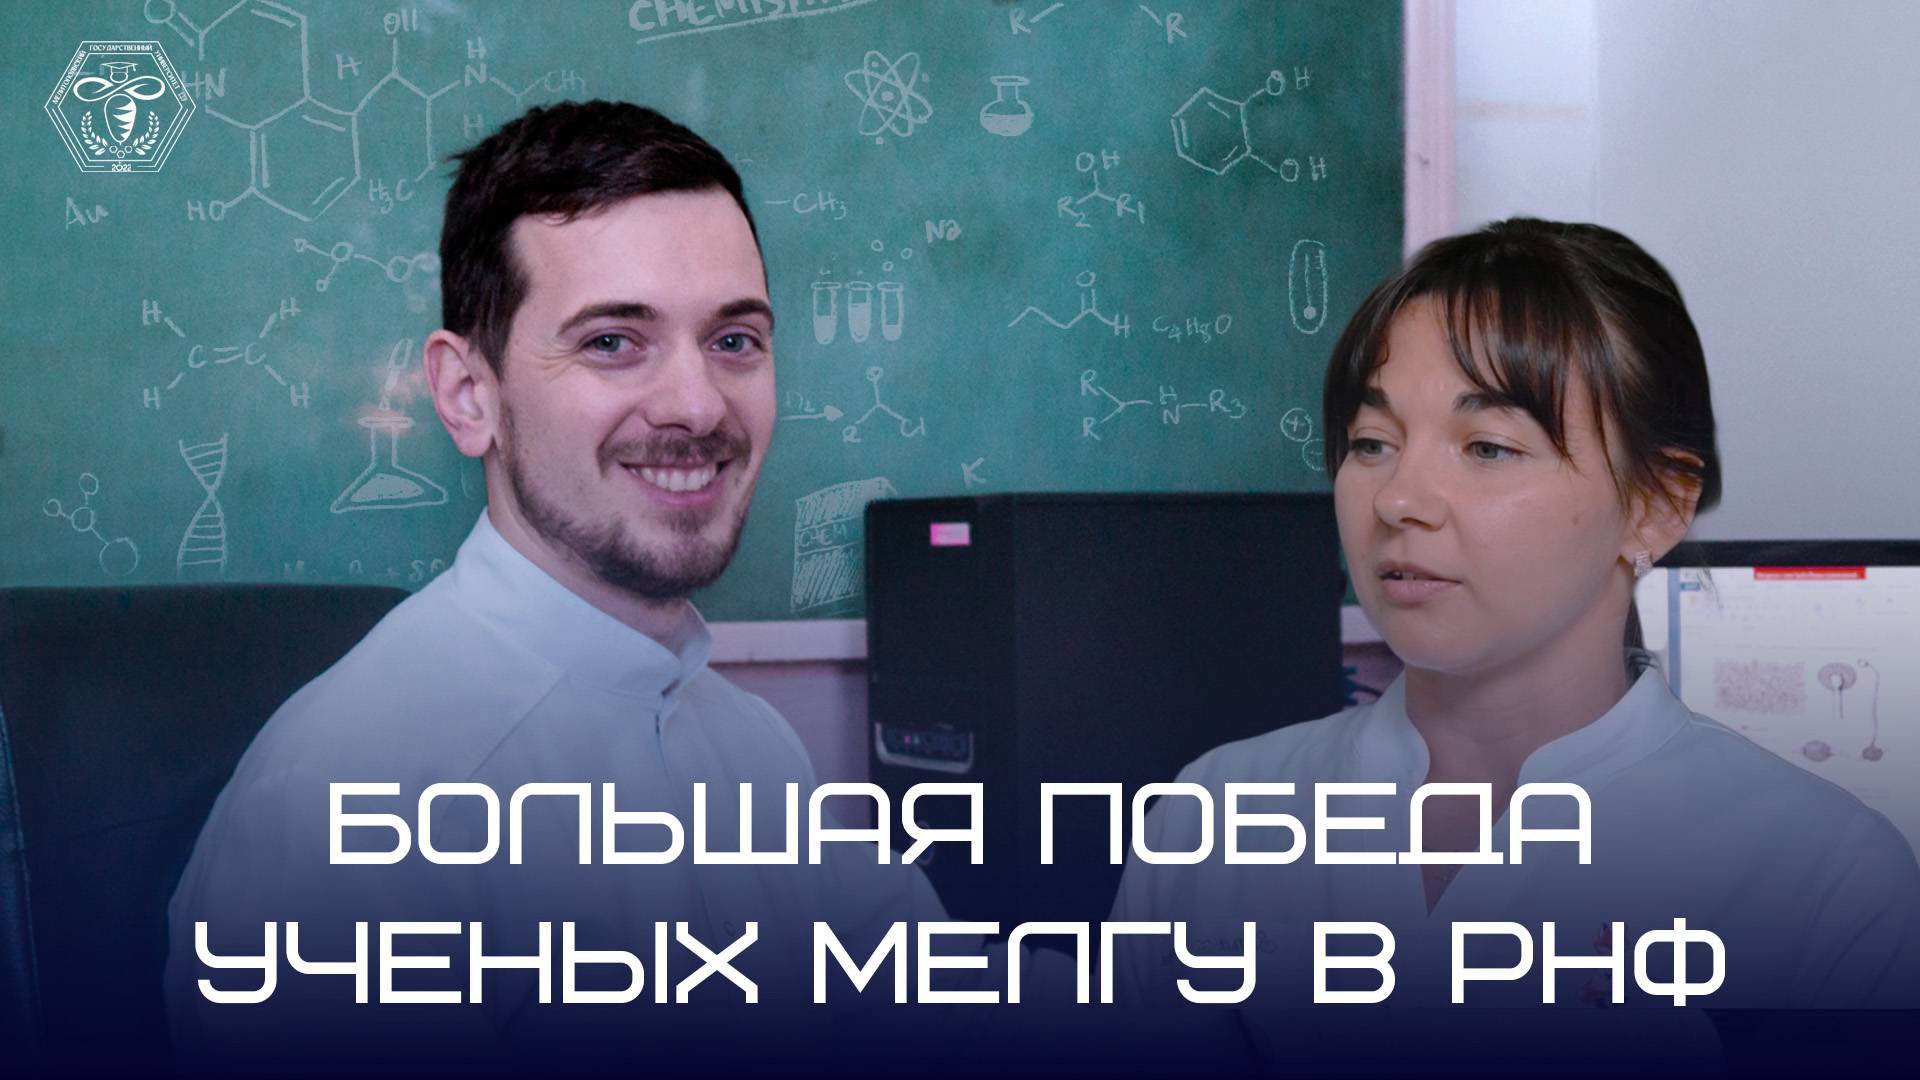 Молодой ученый МелГУ - победитель грантового конкурса от Российского научного фонда!